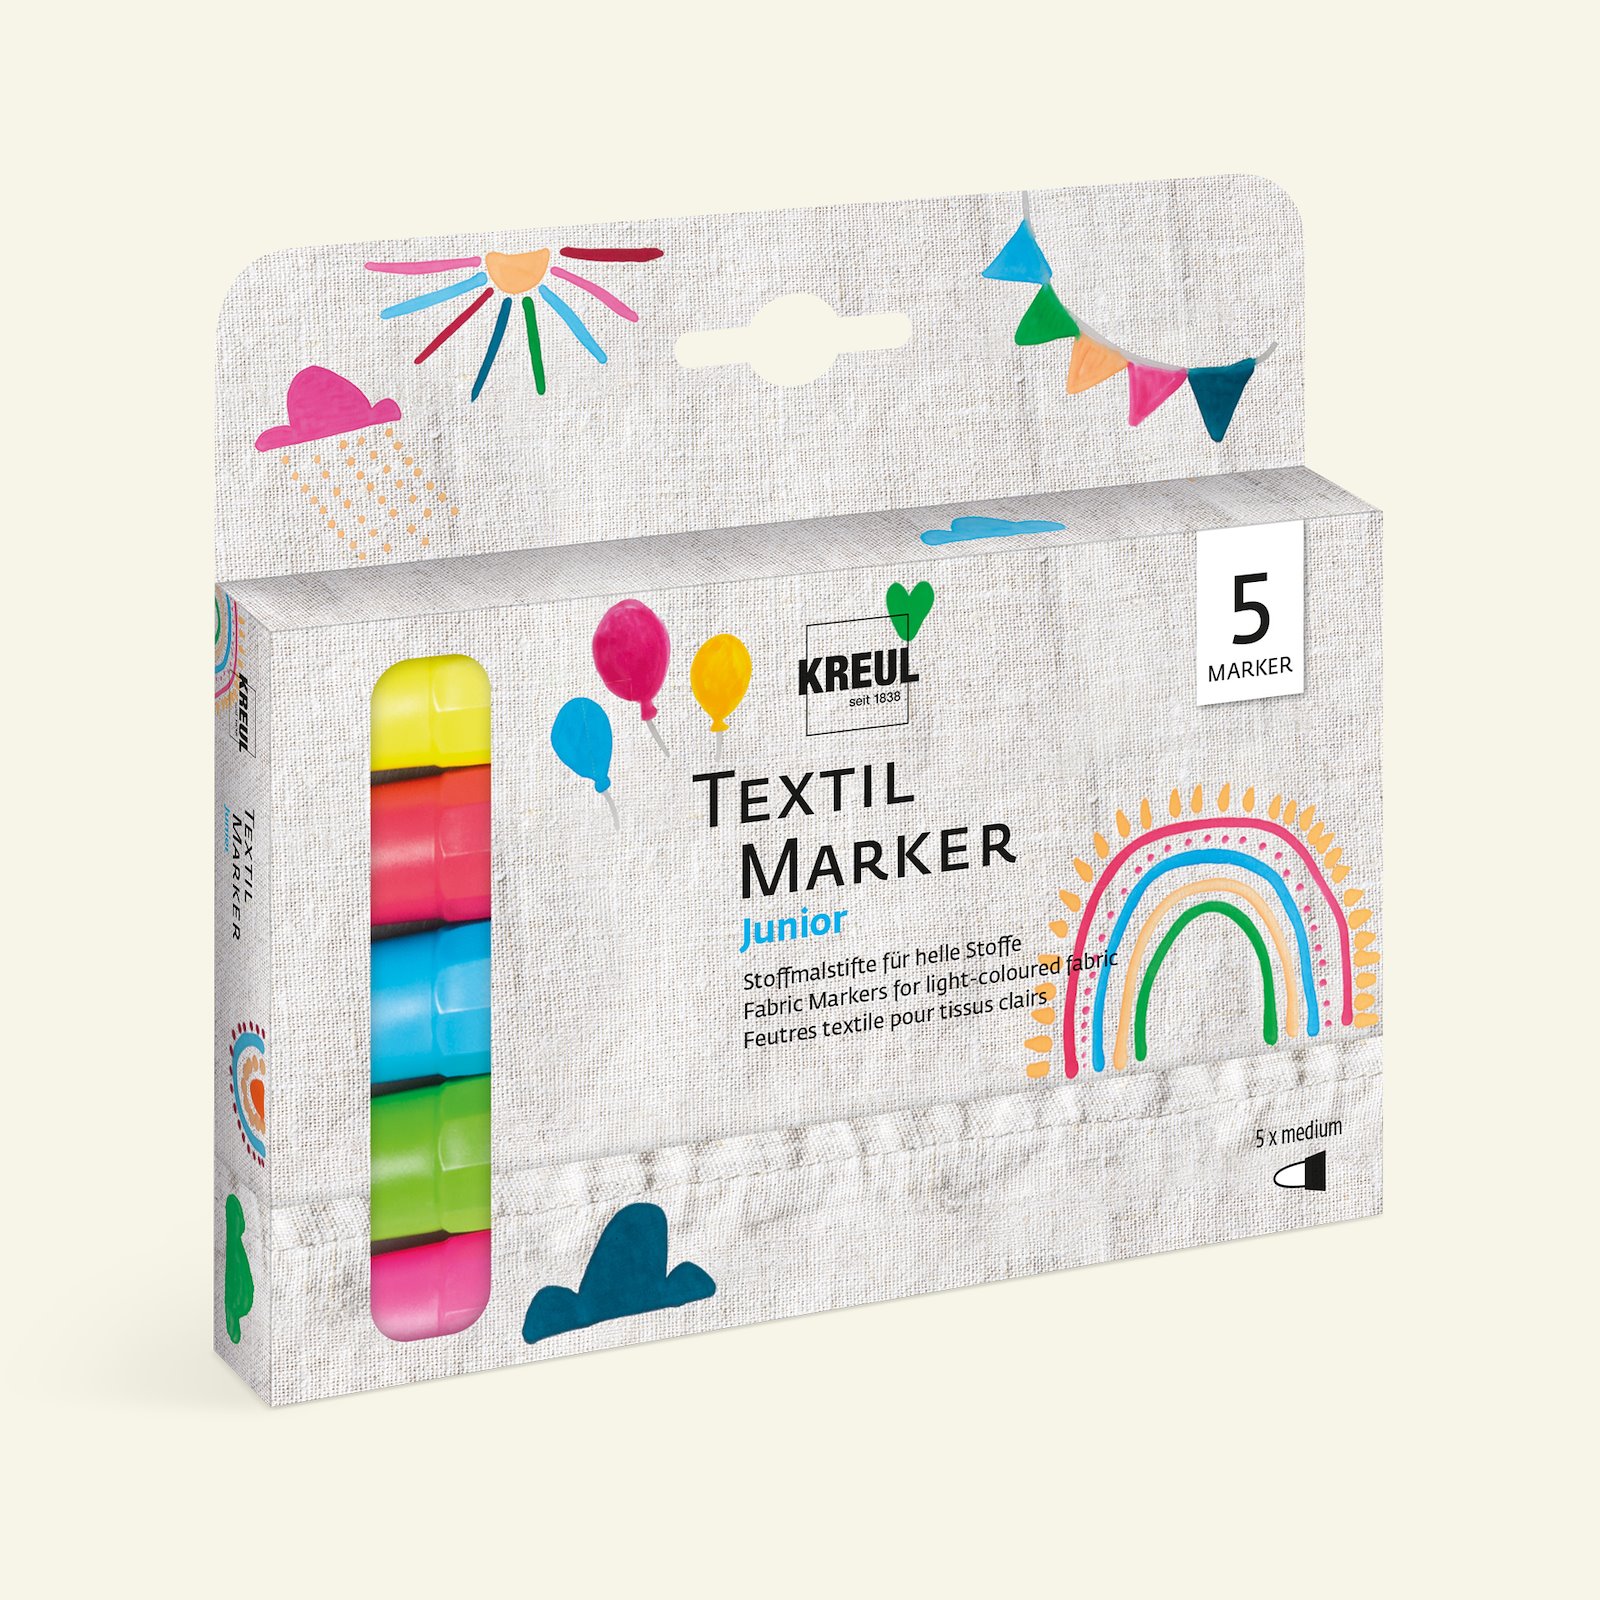 Textile marker medium junior set of 5 31619_pack